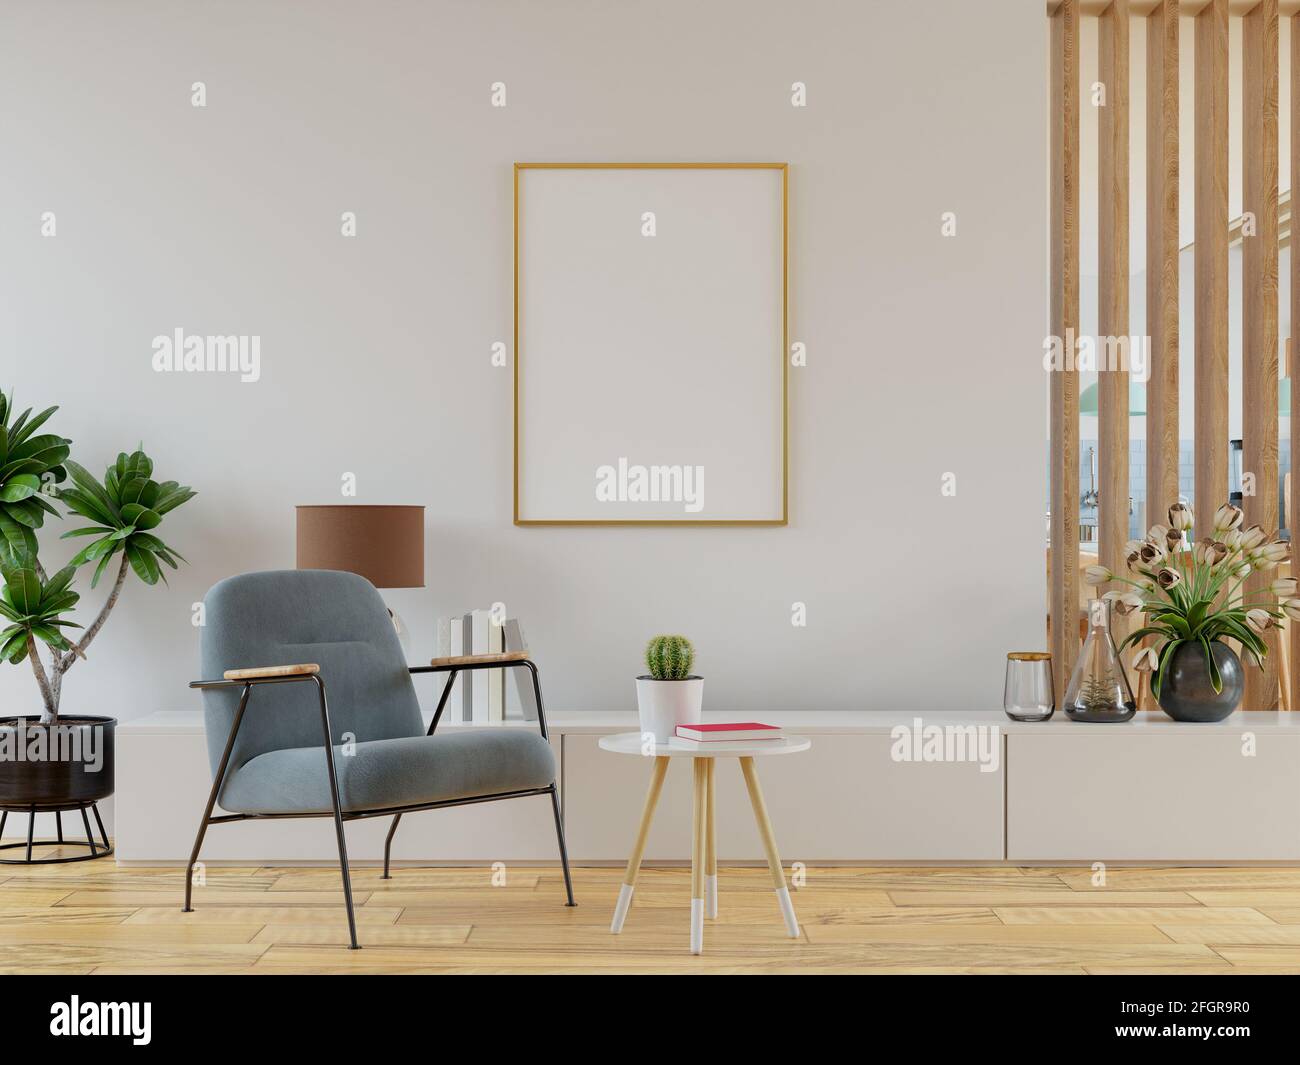 Maquette d'affiche avec cadres verticaux sur le mur vide dans la salle de séjour Intérieur avec fauteuil en velours rose. Rendu 3D Banque D'Images